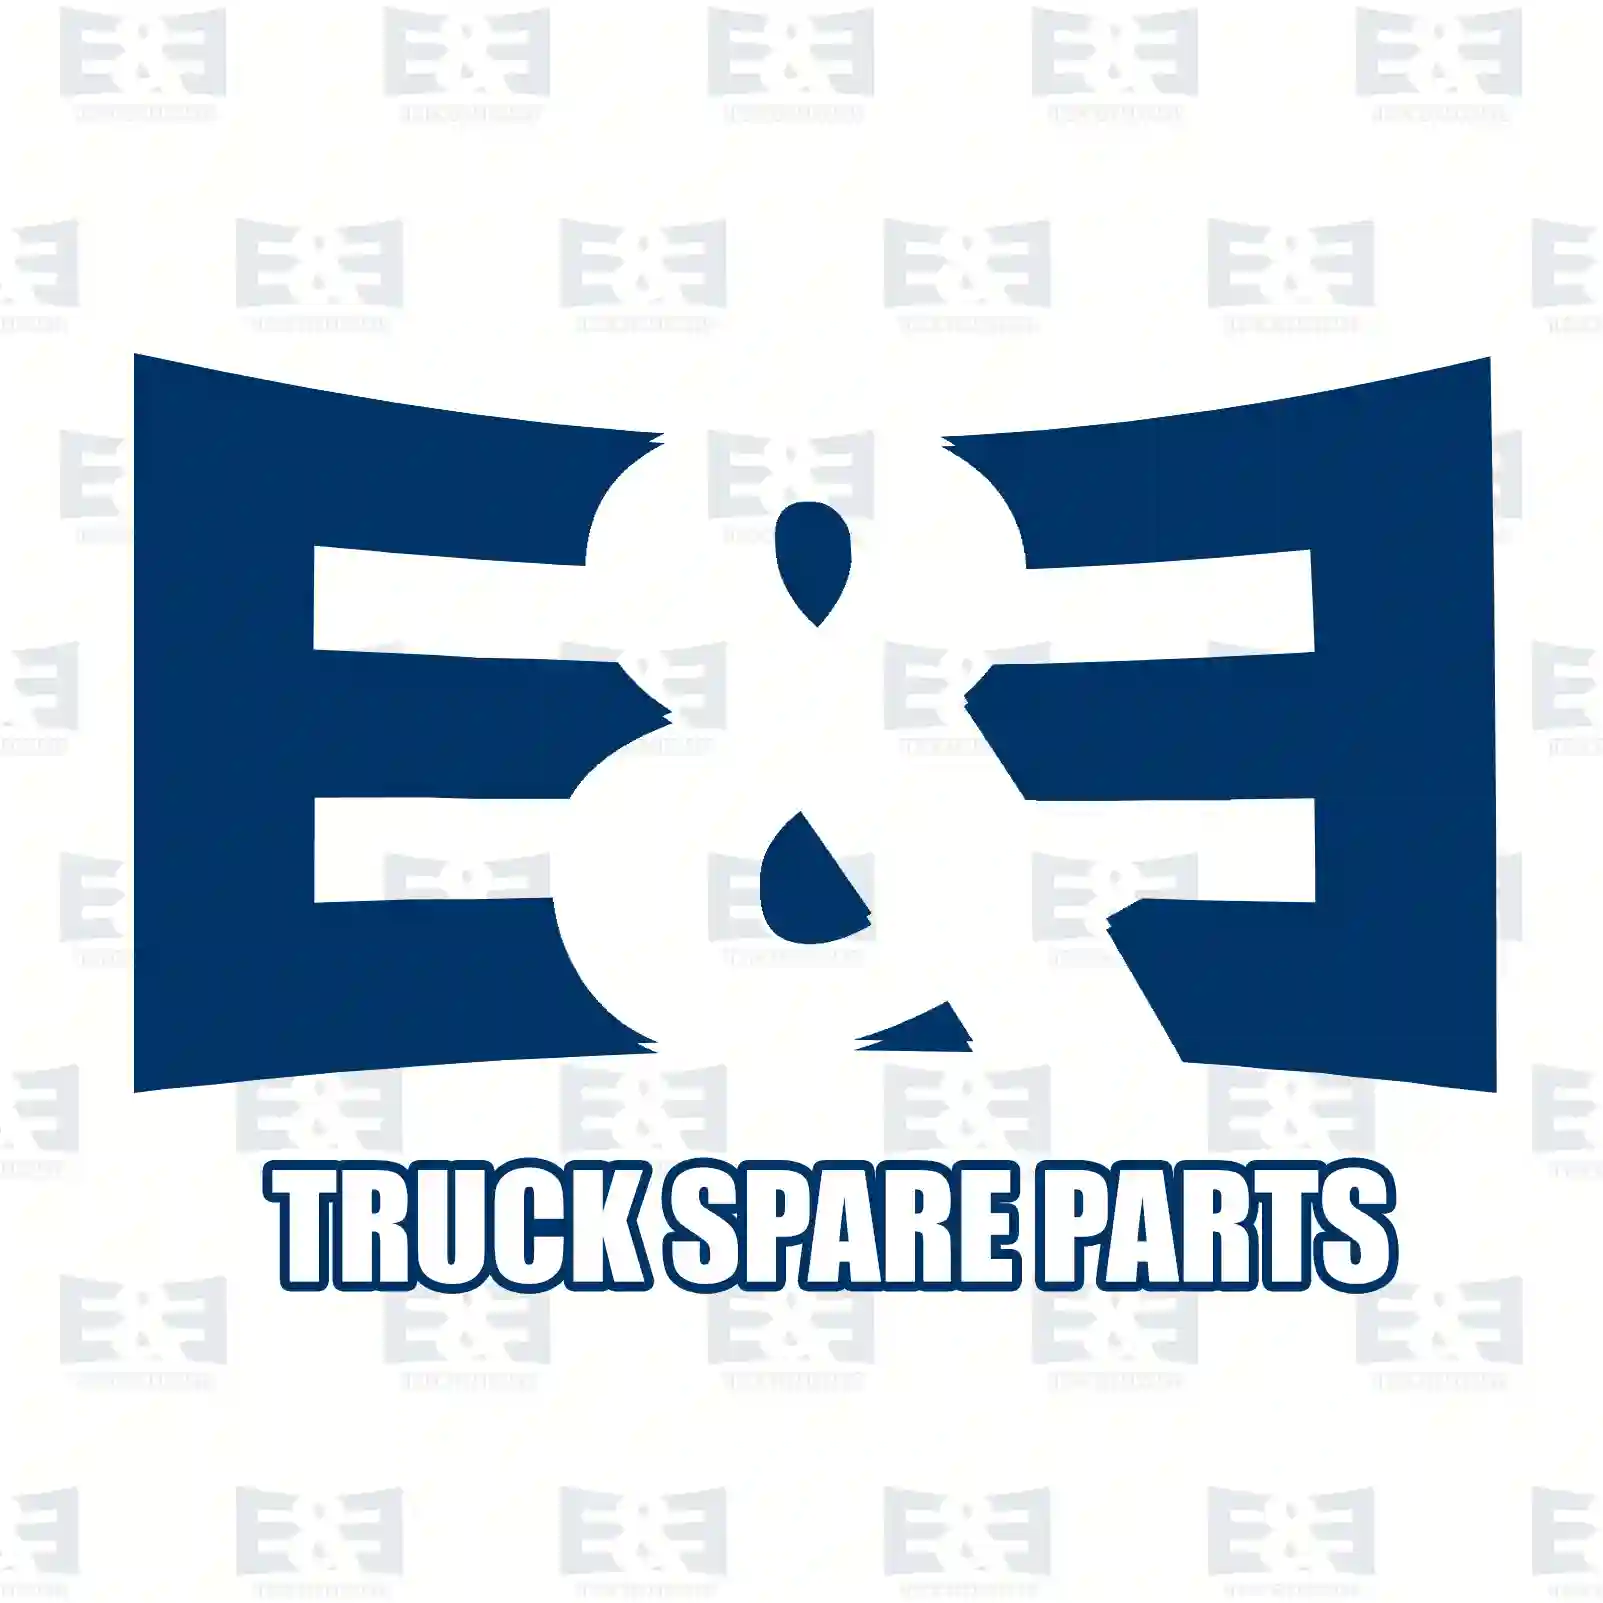 Brake disc, 2E2297303, 1371420, 1464031, 6C11-2A315-AA, 6C11-2A315-AB, , , , ||  2E2297303 E&E Truck Spare Parts | Truck Spare Parts, Auotomotive Spare Parts Brake disc, 2E2297303, 1371420, 1464031, 6C11-2A315-AA, 6C11-2A315-AB, , , , ||  2E2297303 E&E Truck Spare Parts | Truck Spare Parts, Auotomotive Spare Parts